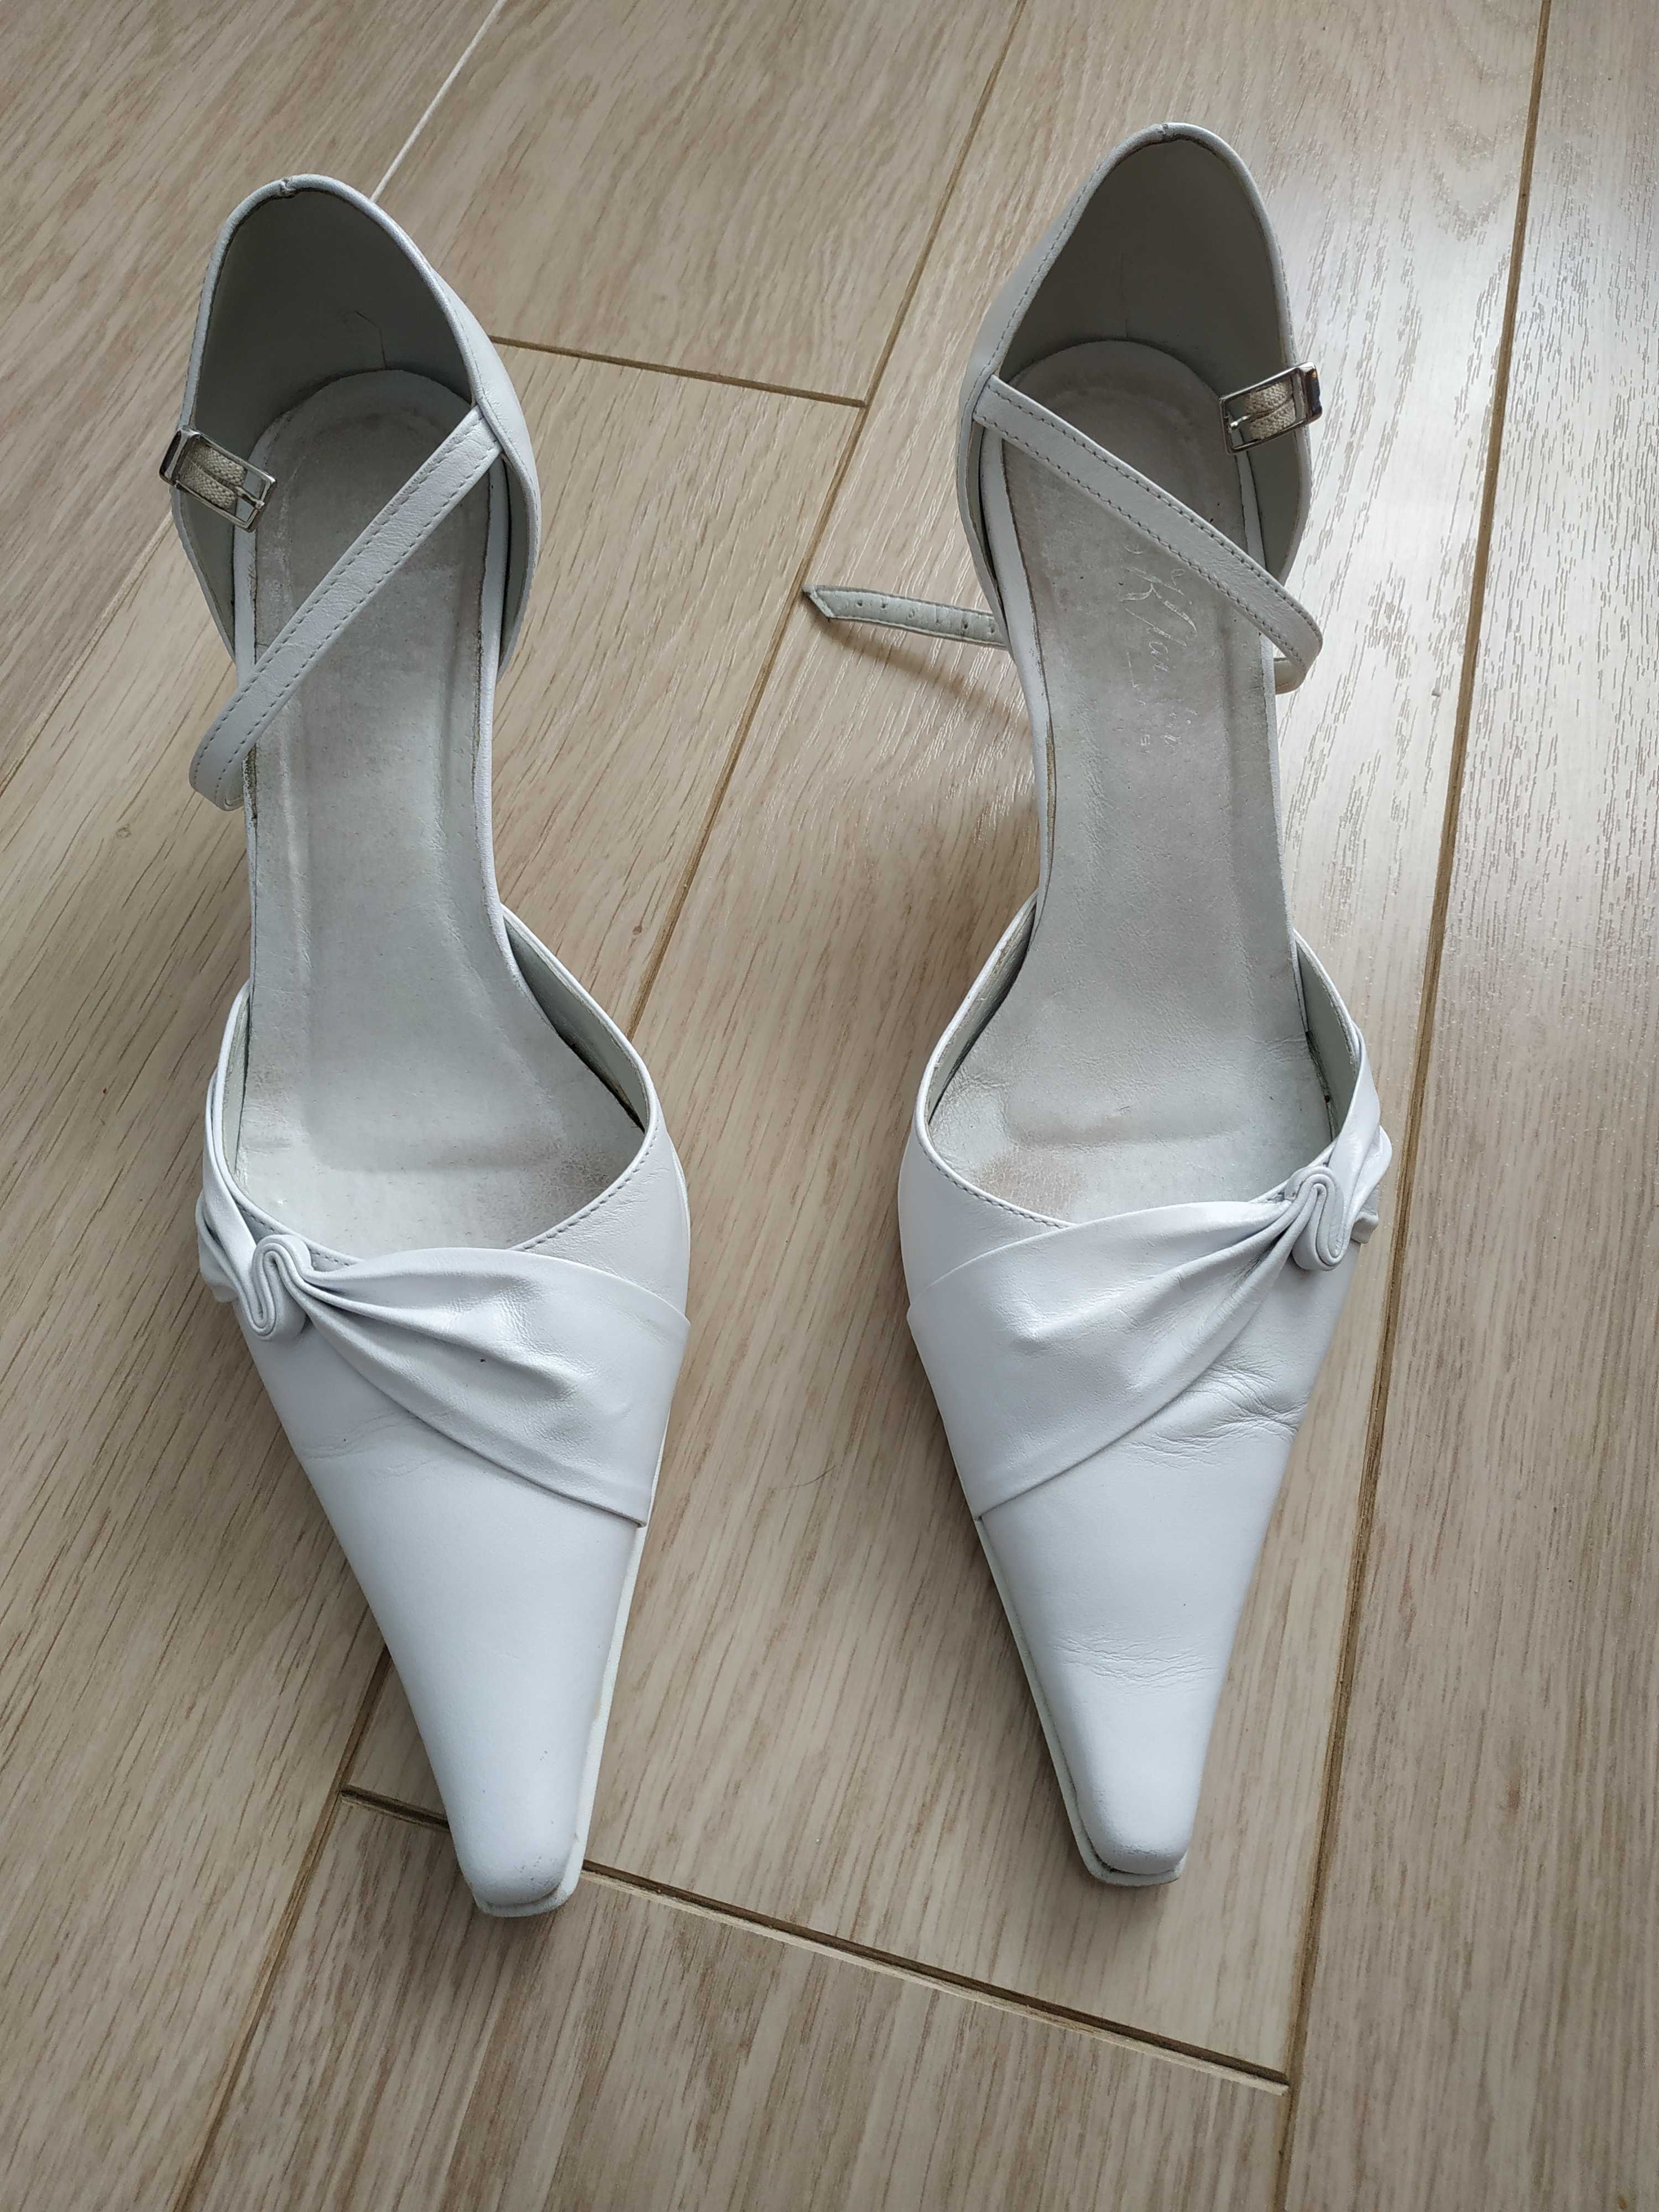 Buty ślubne białe szpilki ze skóry KLAUDIA-Paris roz 37 - wow :)